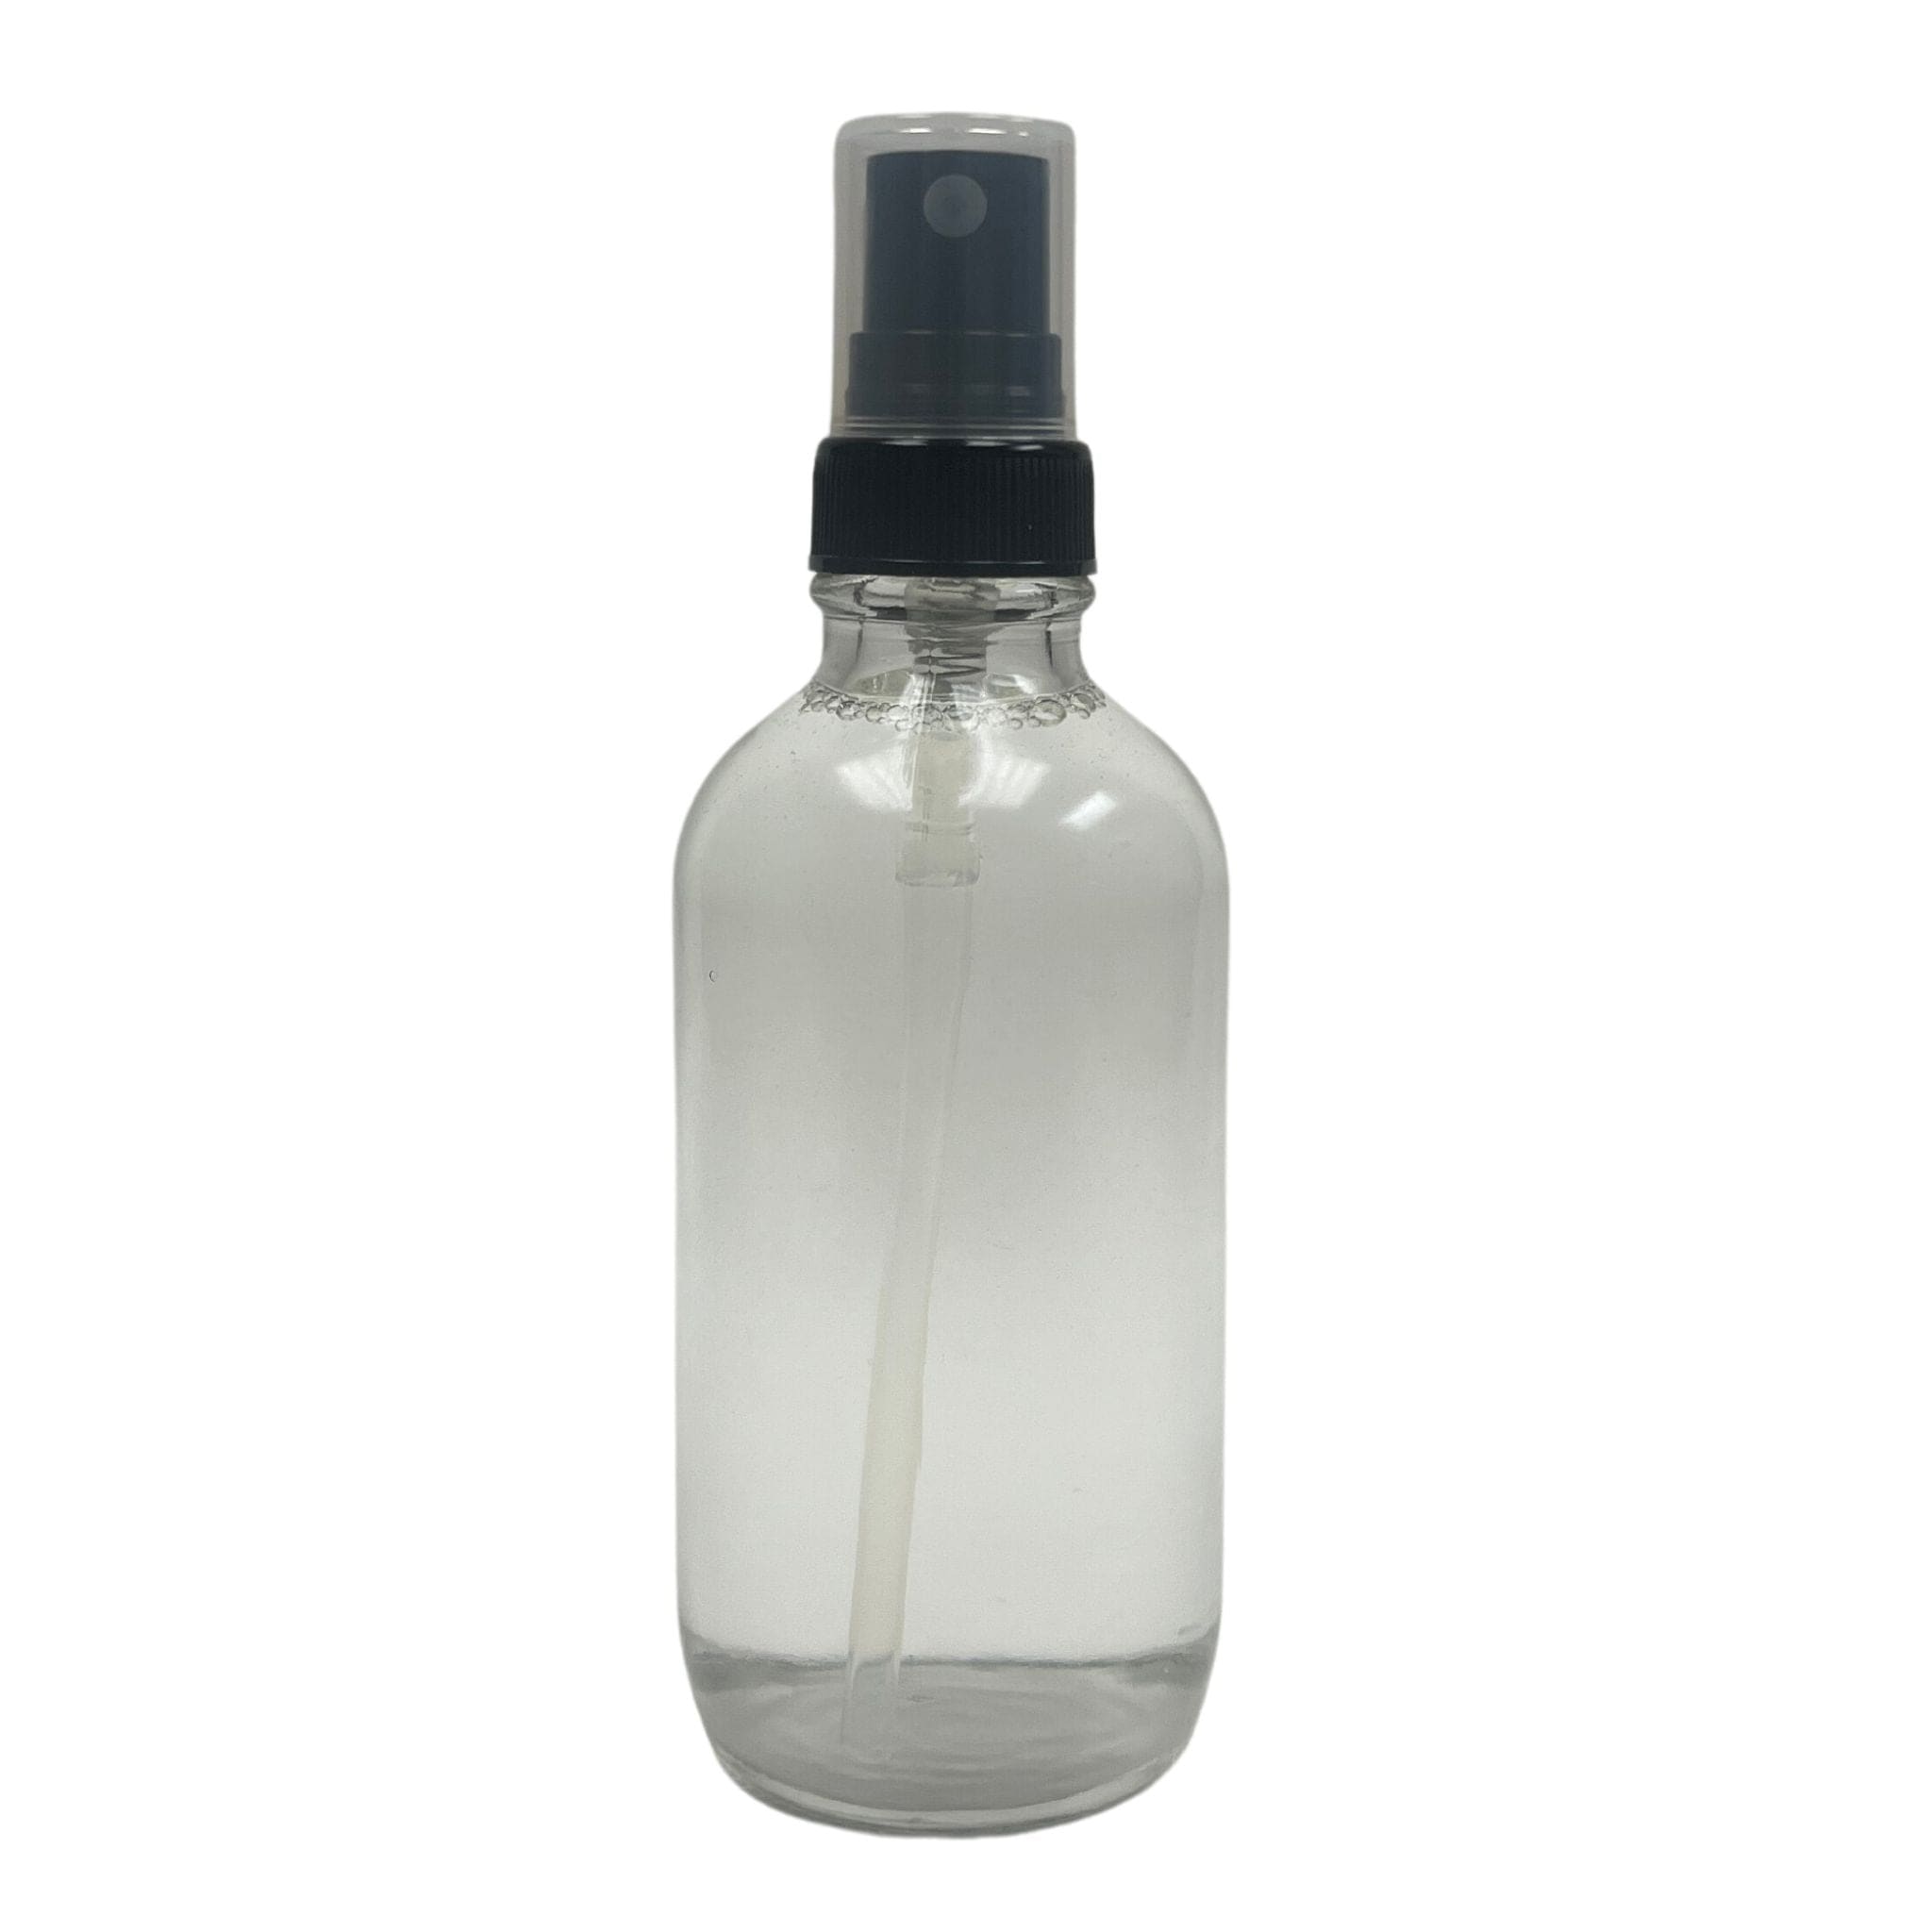 Private Label by Velavida Room Sprays Private Label Room Sprays (24 Bottles)